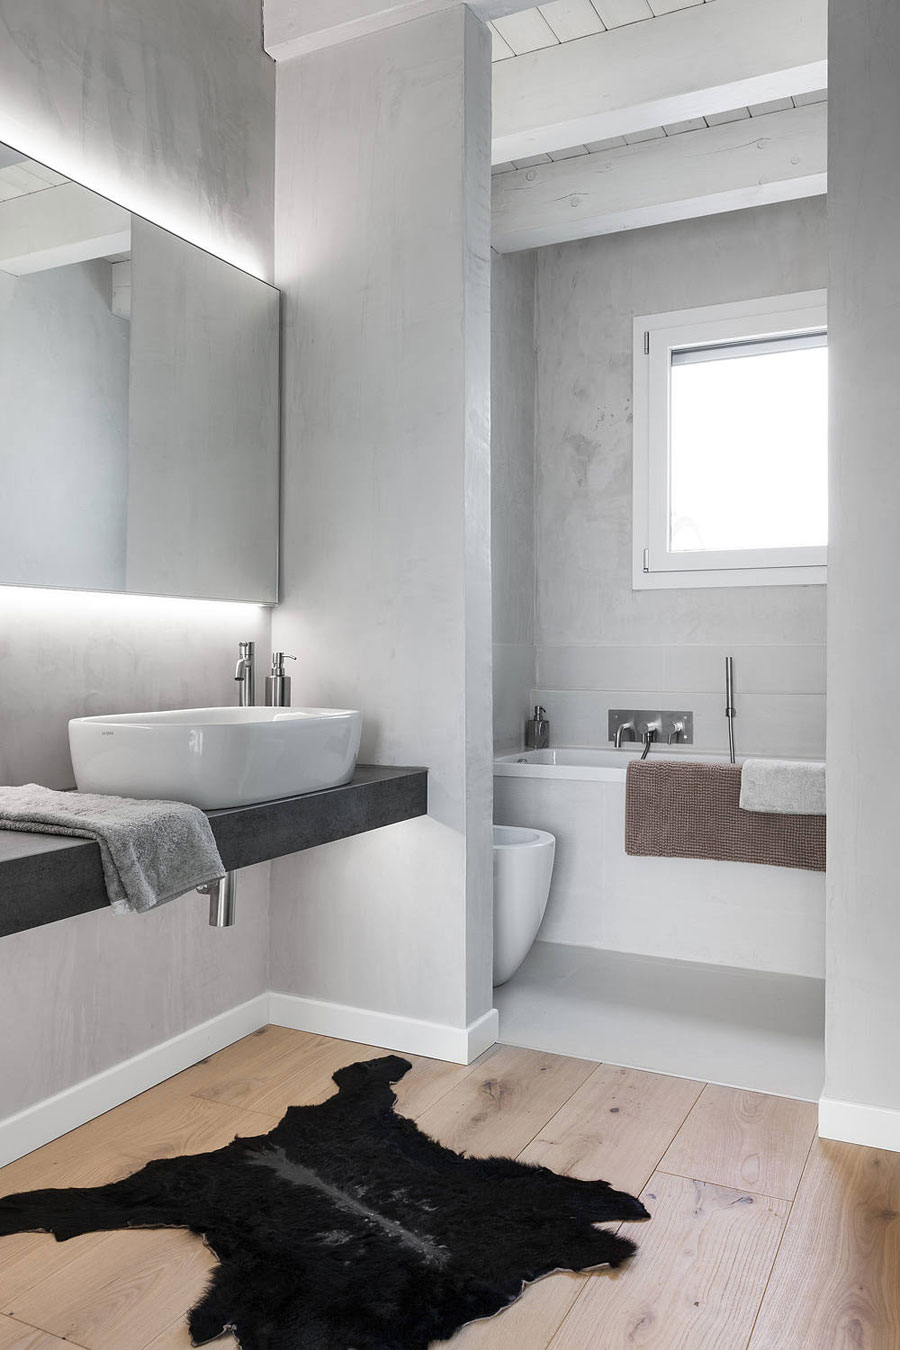 Ook in deze badkamer, ontworpen door Anna Laura Businaro, is er gekozen voor een strakke gietvloer in het natte gedeelte en een houten vloer in het droge gedeelte.